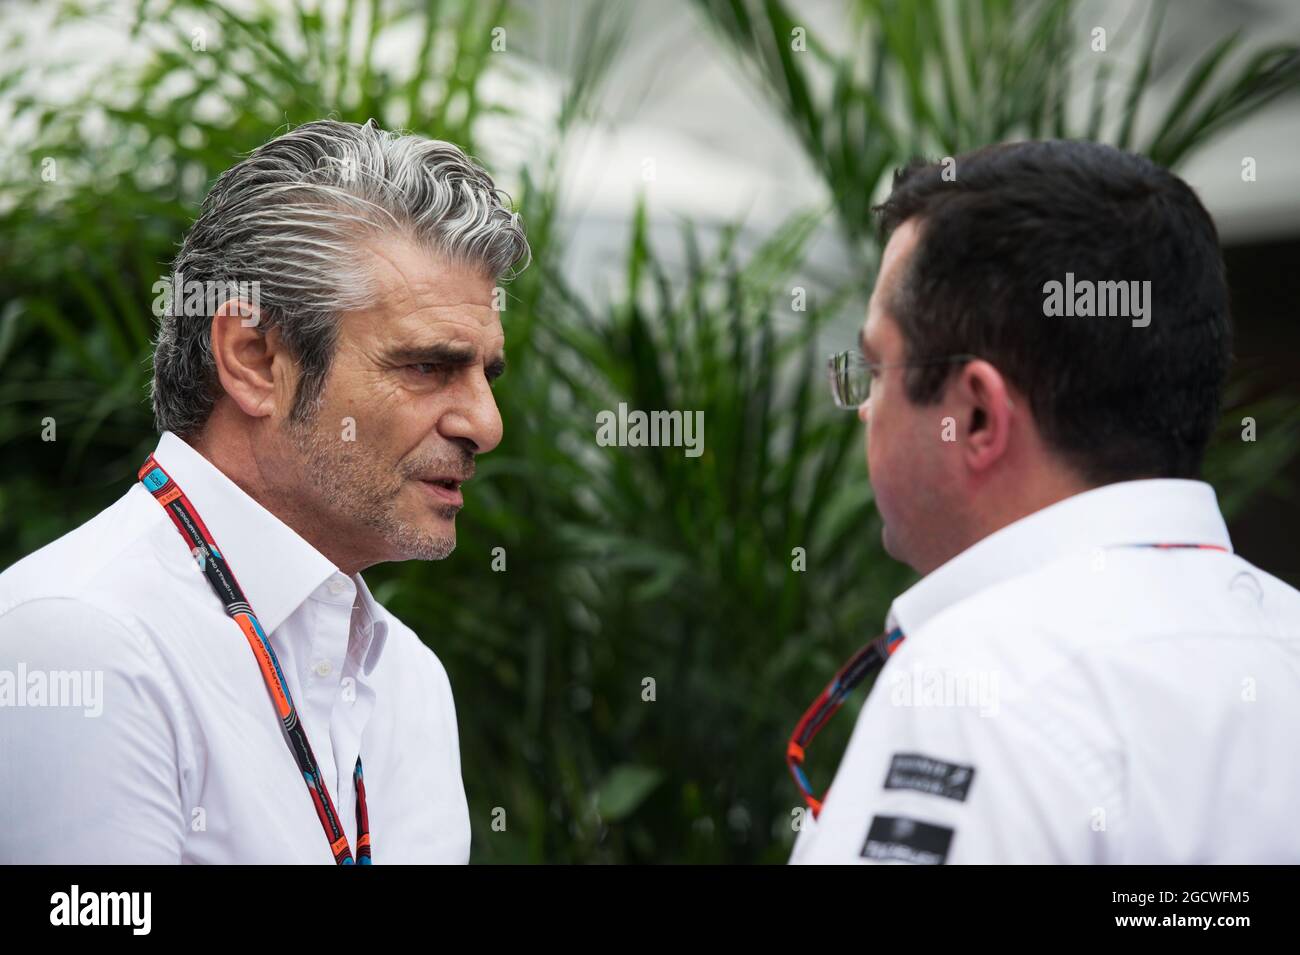 (De gauche à droite) : Maurizio Arrivabene (ITA) Ferrari Directeur de l'équipe avec Eric Boullier (FRA) Directeur de McLaren Racing. Grand Prix des États-Unis, jeudi 22 octobre 2015. Circuit of the Americas, Austin, Texas, États-Unis. Banque D'Images